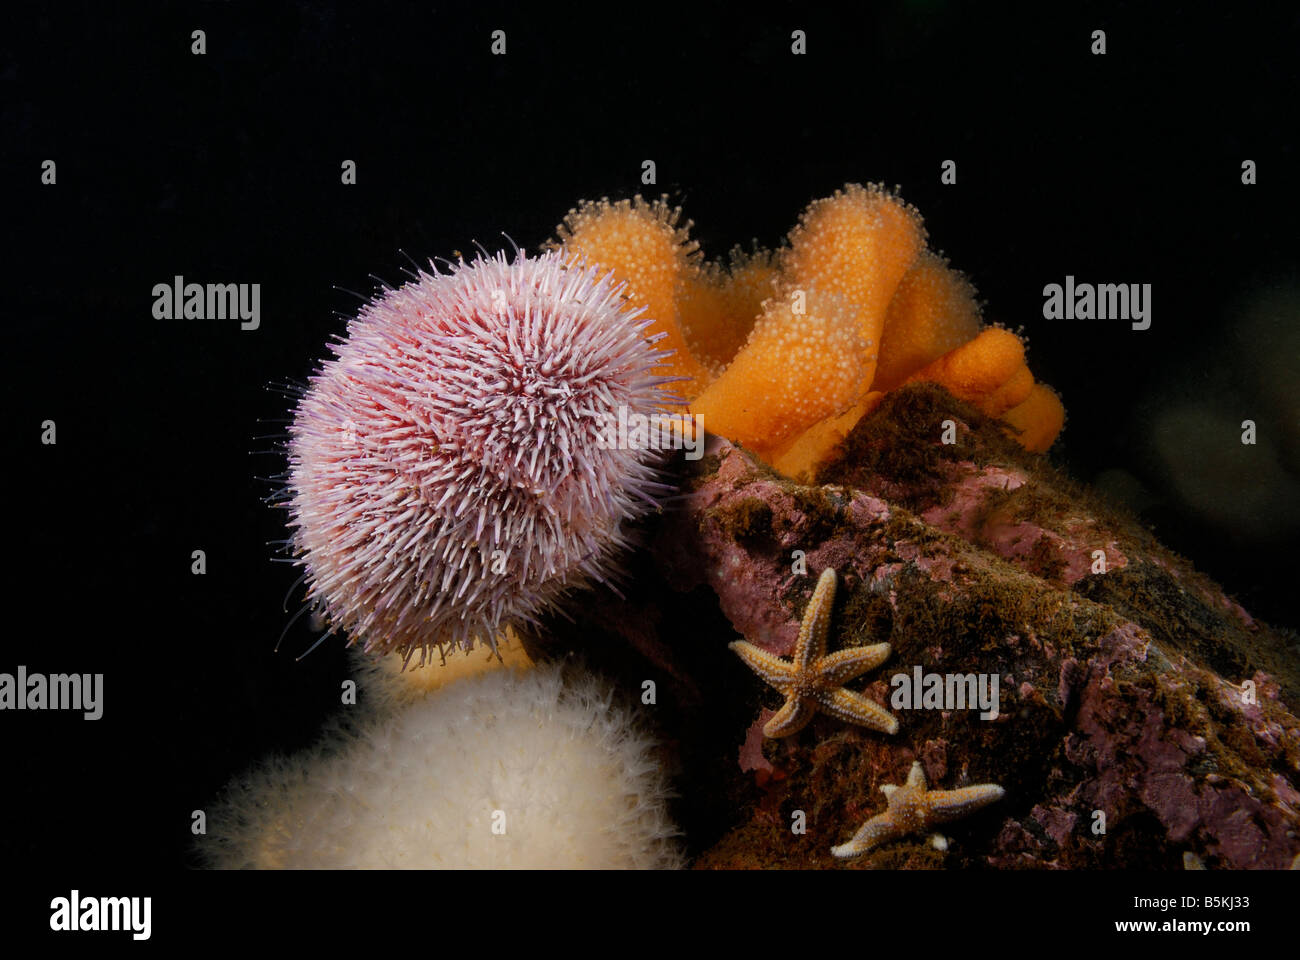 Seeigel (Echinus esculentus), Fisch- und Weichkorallen (alcyonium Digitatum), St. Abbs Head, UK. Stockfoto